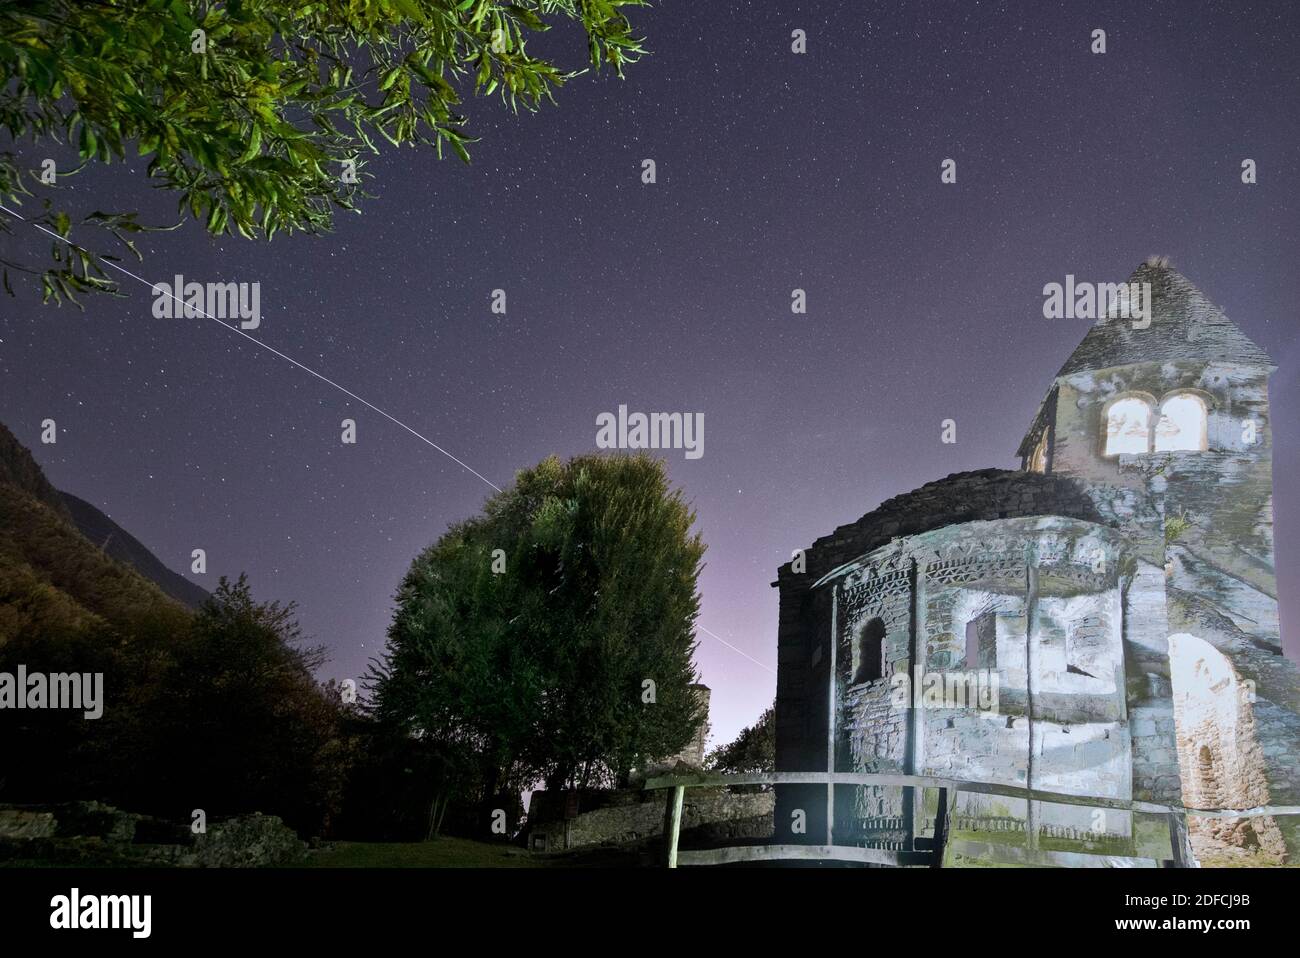 Il percorso della Stazione spaziale Internazionale (ISS) nel cielo notturno sull'abbazia di San Pietro in Vallate, Valtellina, Lombardia, Italia Foto Stock